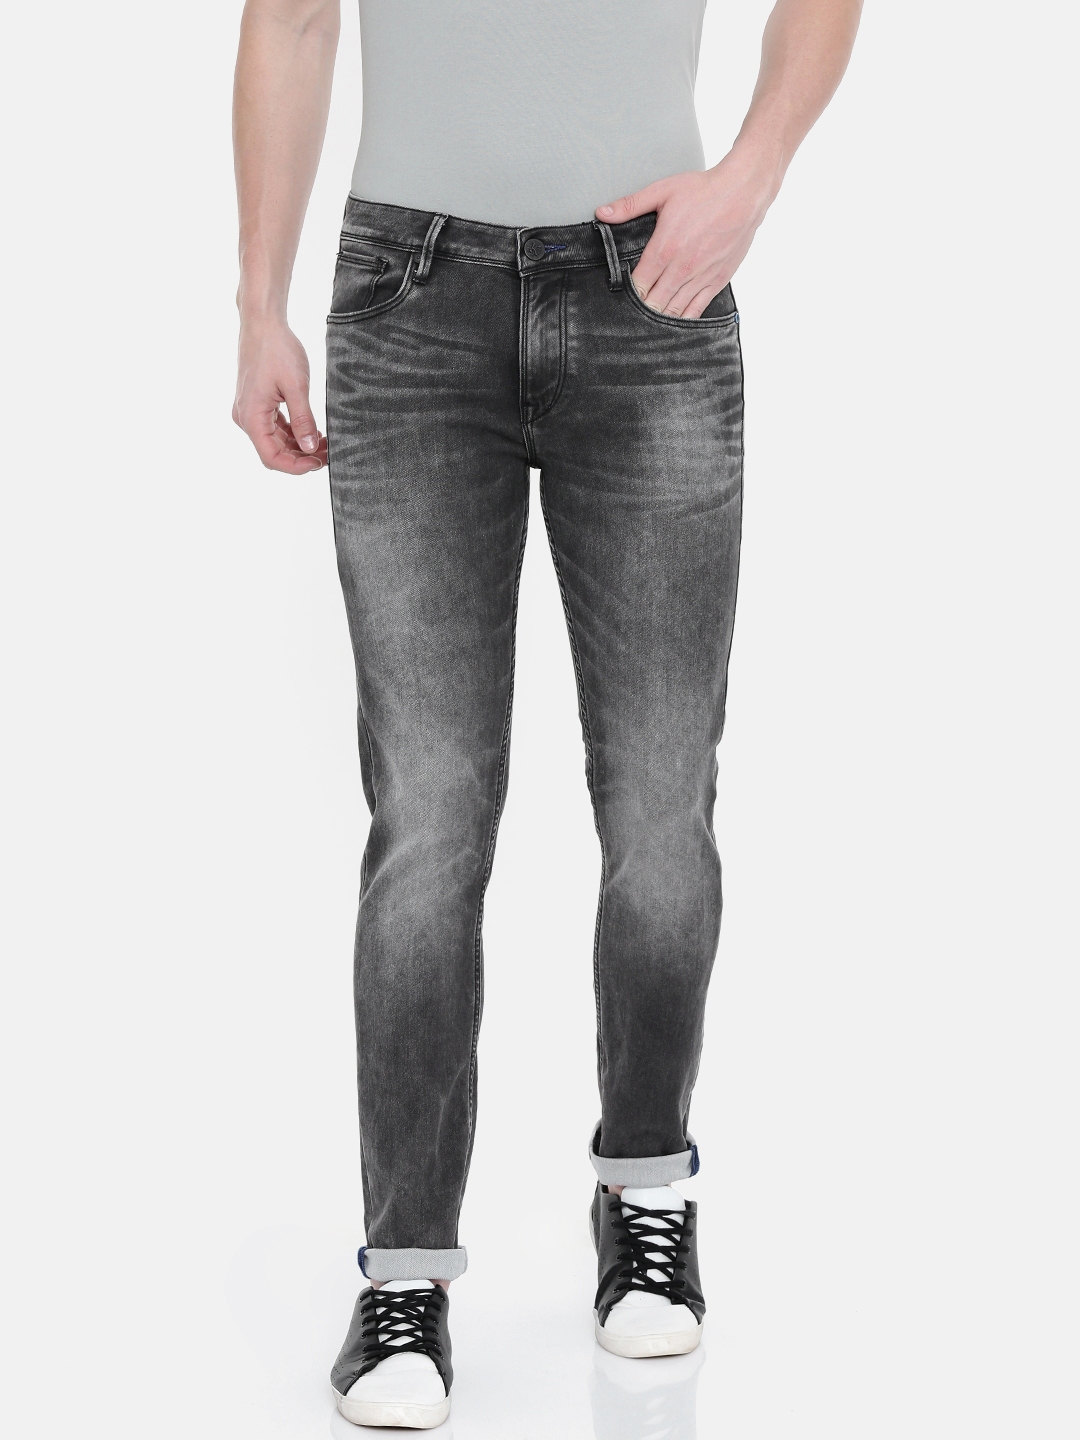 levis jeans 2019